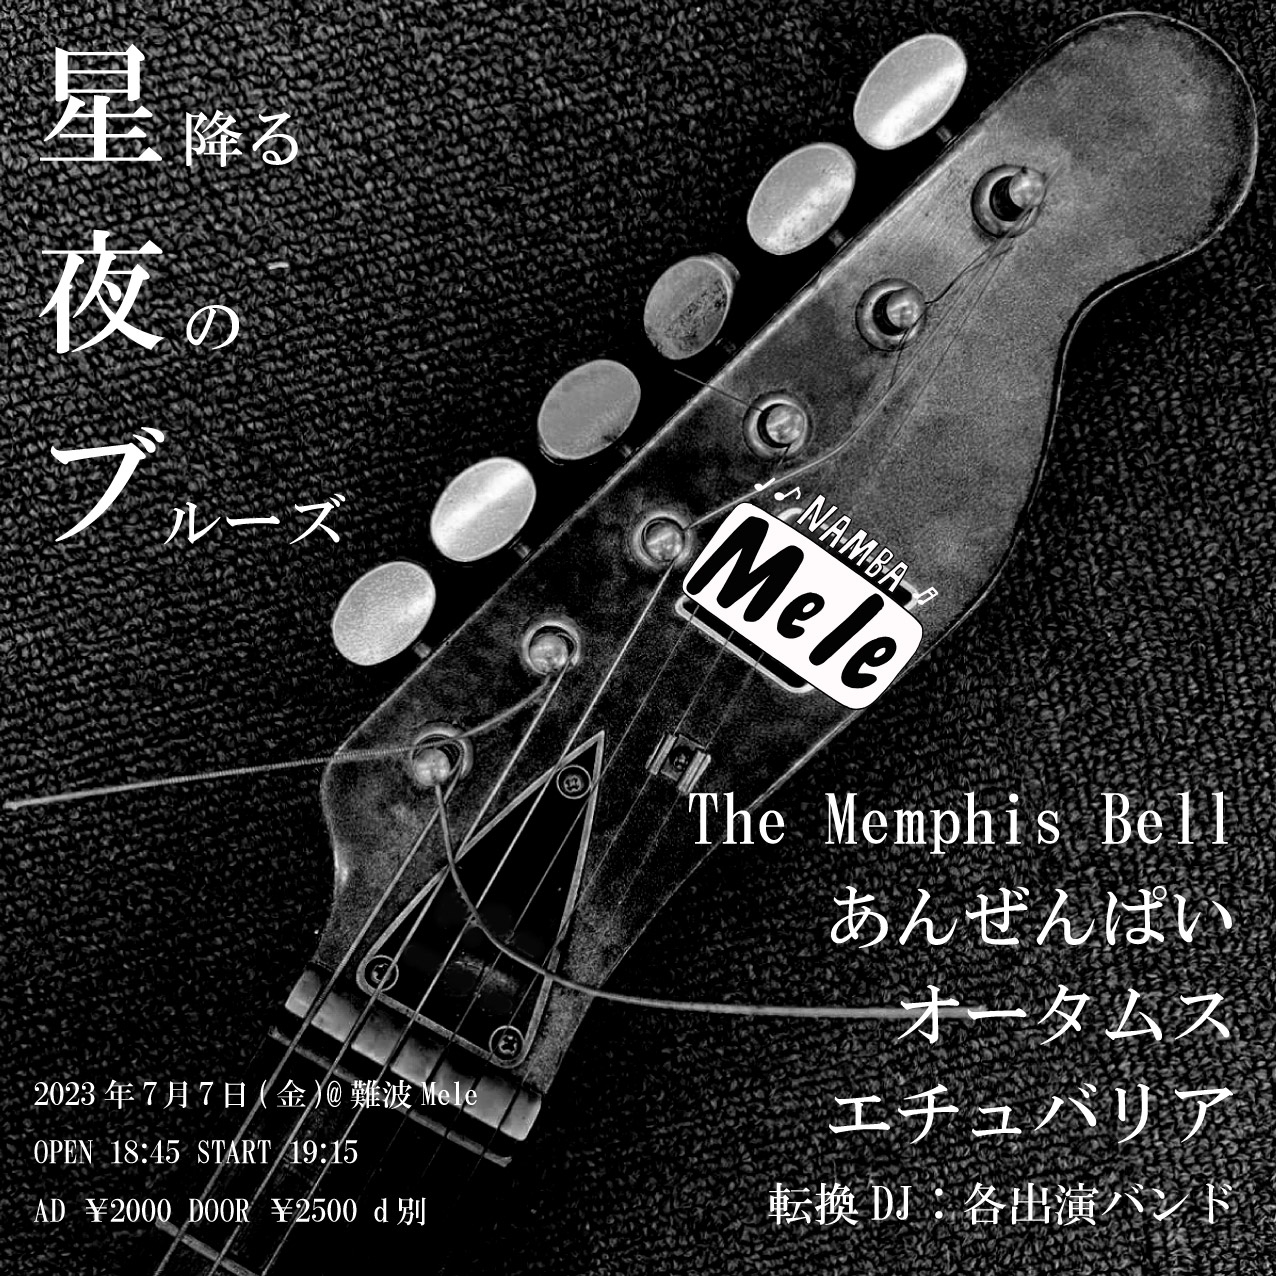 The Memphis Bell 202307072